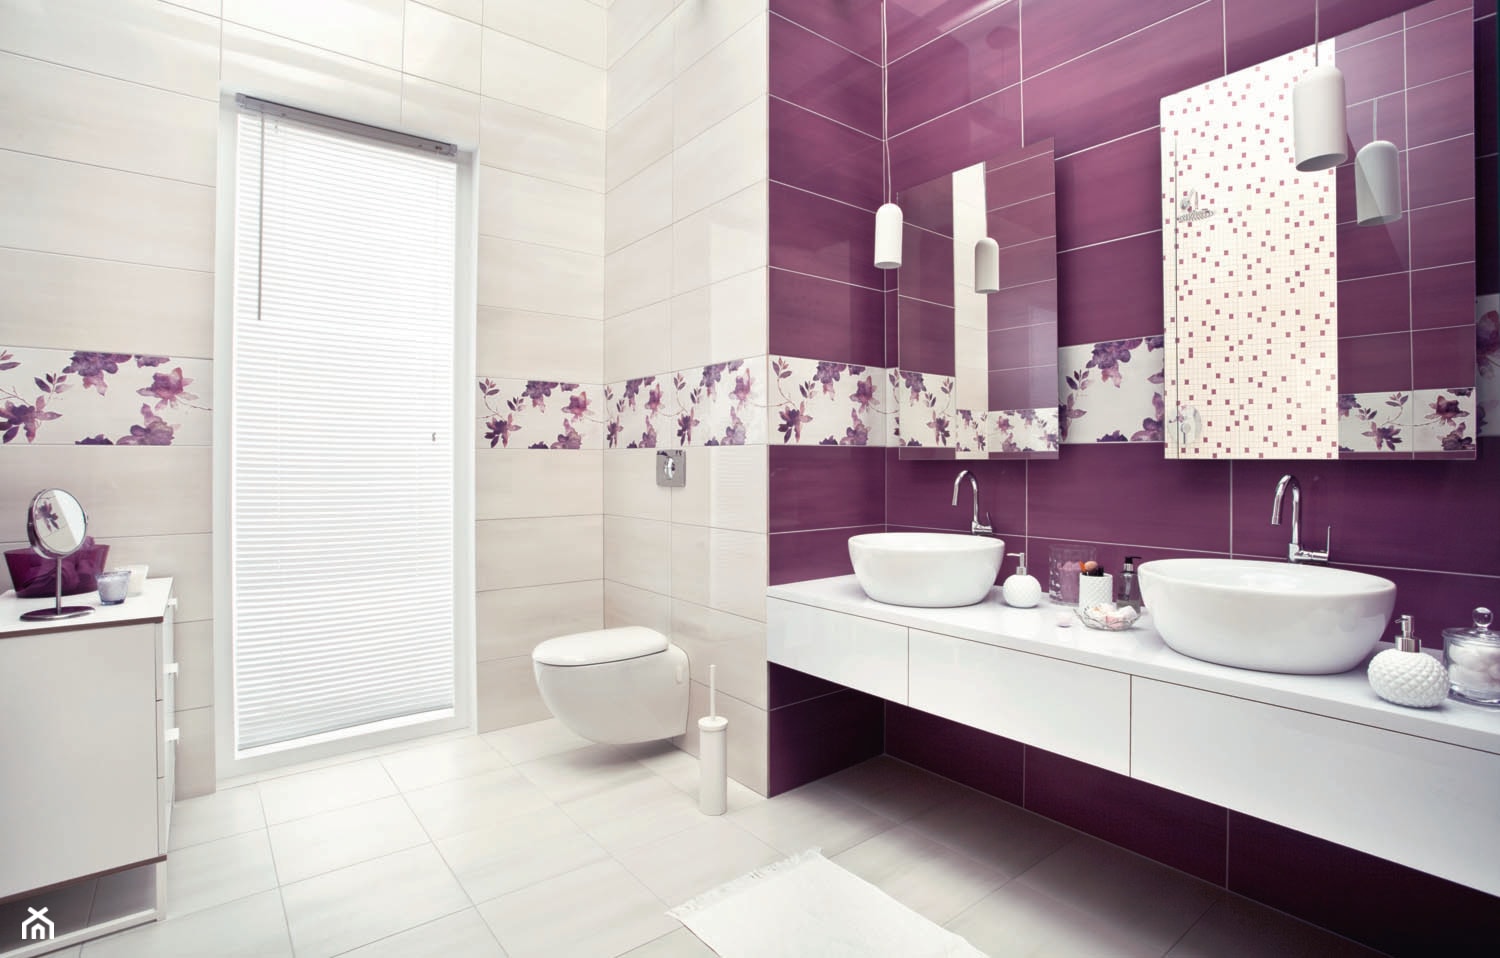 luciola-luci - Z dwoma umywalkami łazienka - zdjęcie od Ceramika Paradyż - Homebook